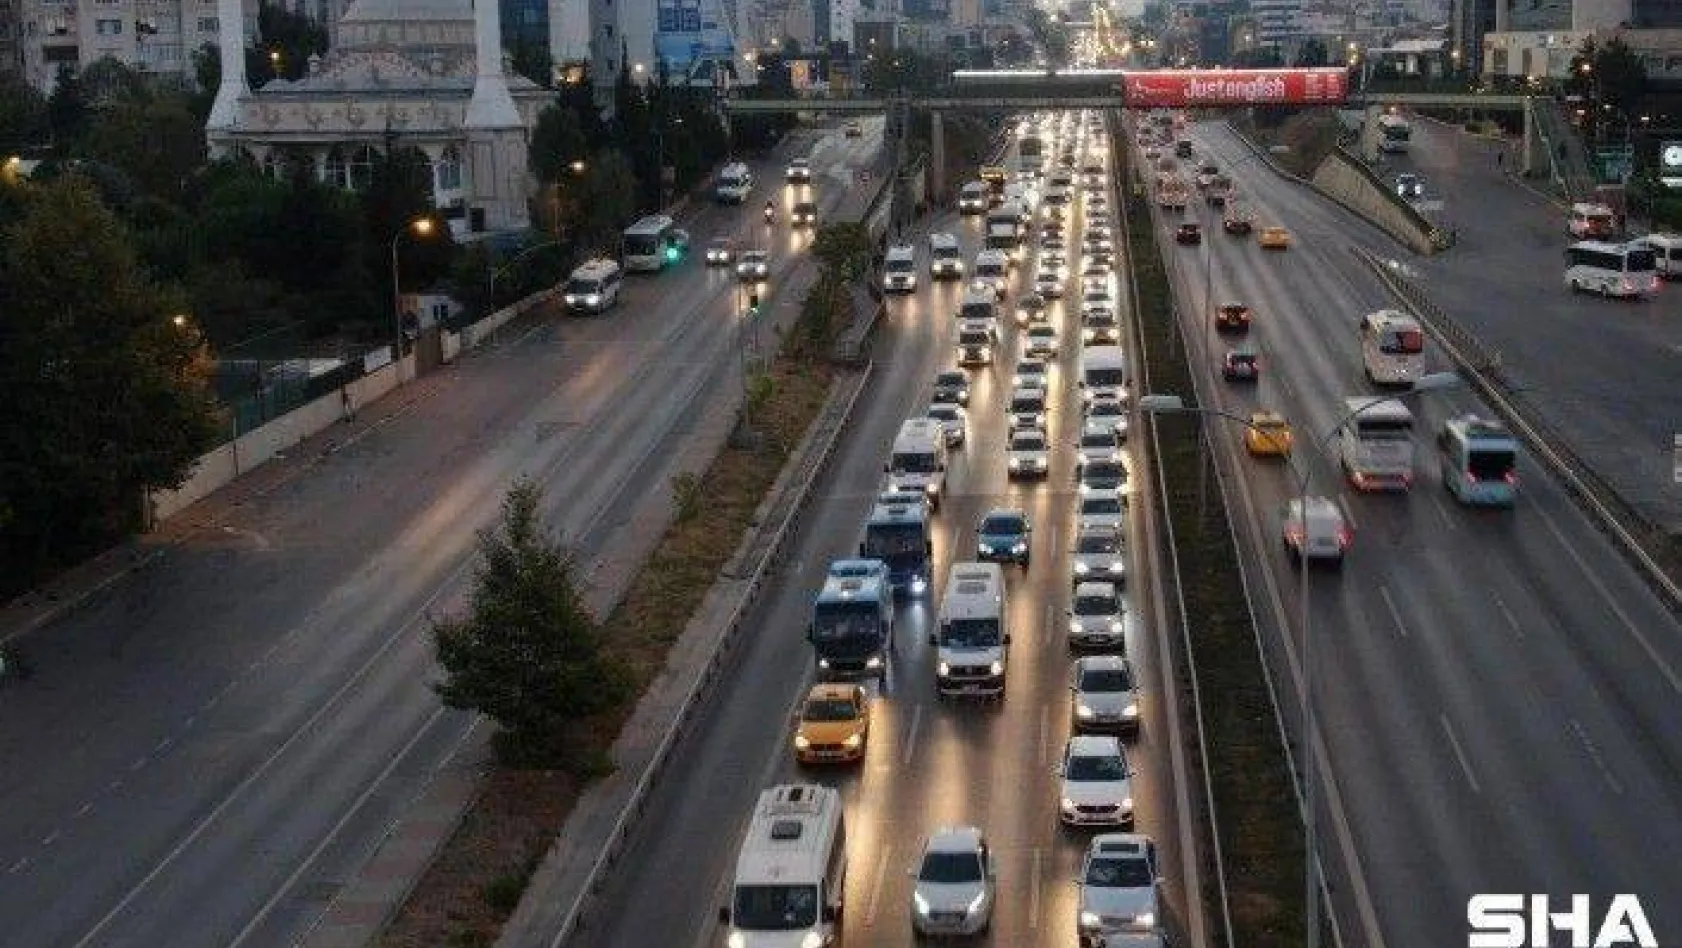 İstanbul'da haftanın ilk iş gününde trafik yoğunluğu